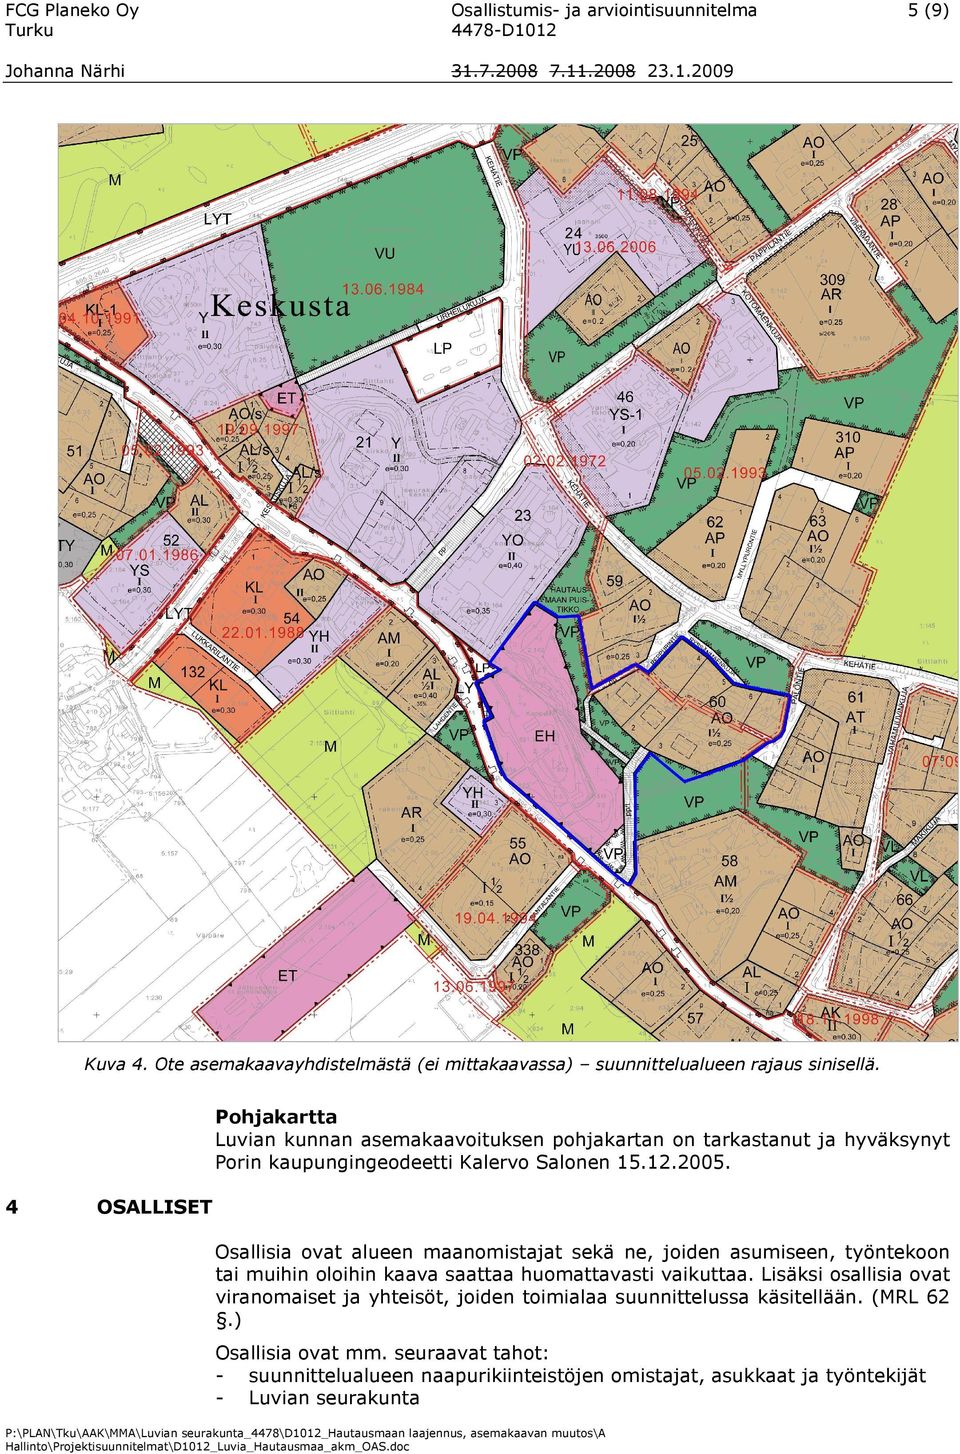 Pohjakartta Luvian kunnan asemakaavoituksen pohjakartan on tarkastanut ja hyväksynyt Porin kaupungingeodeetti Kalervo Salonen 15.12.2005.